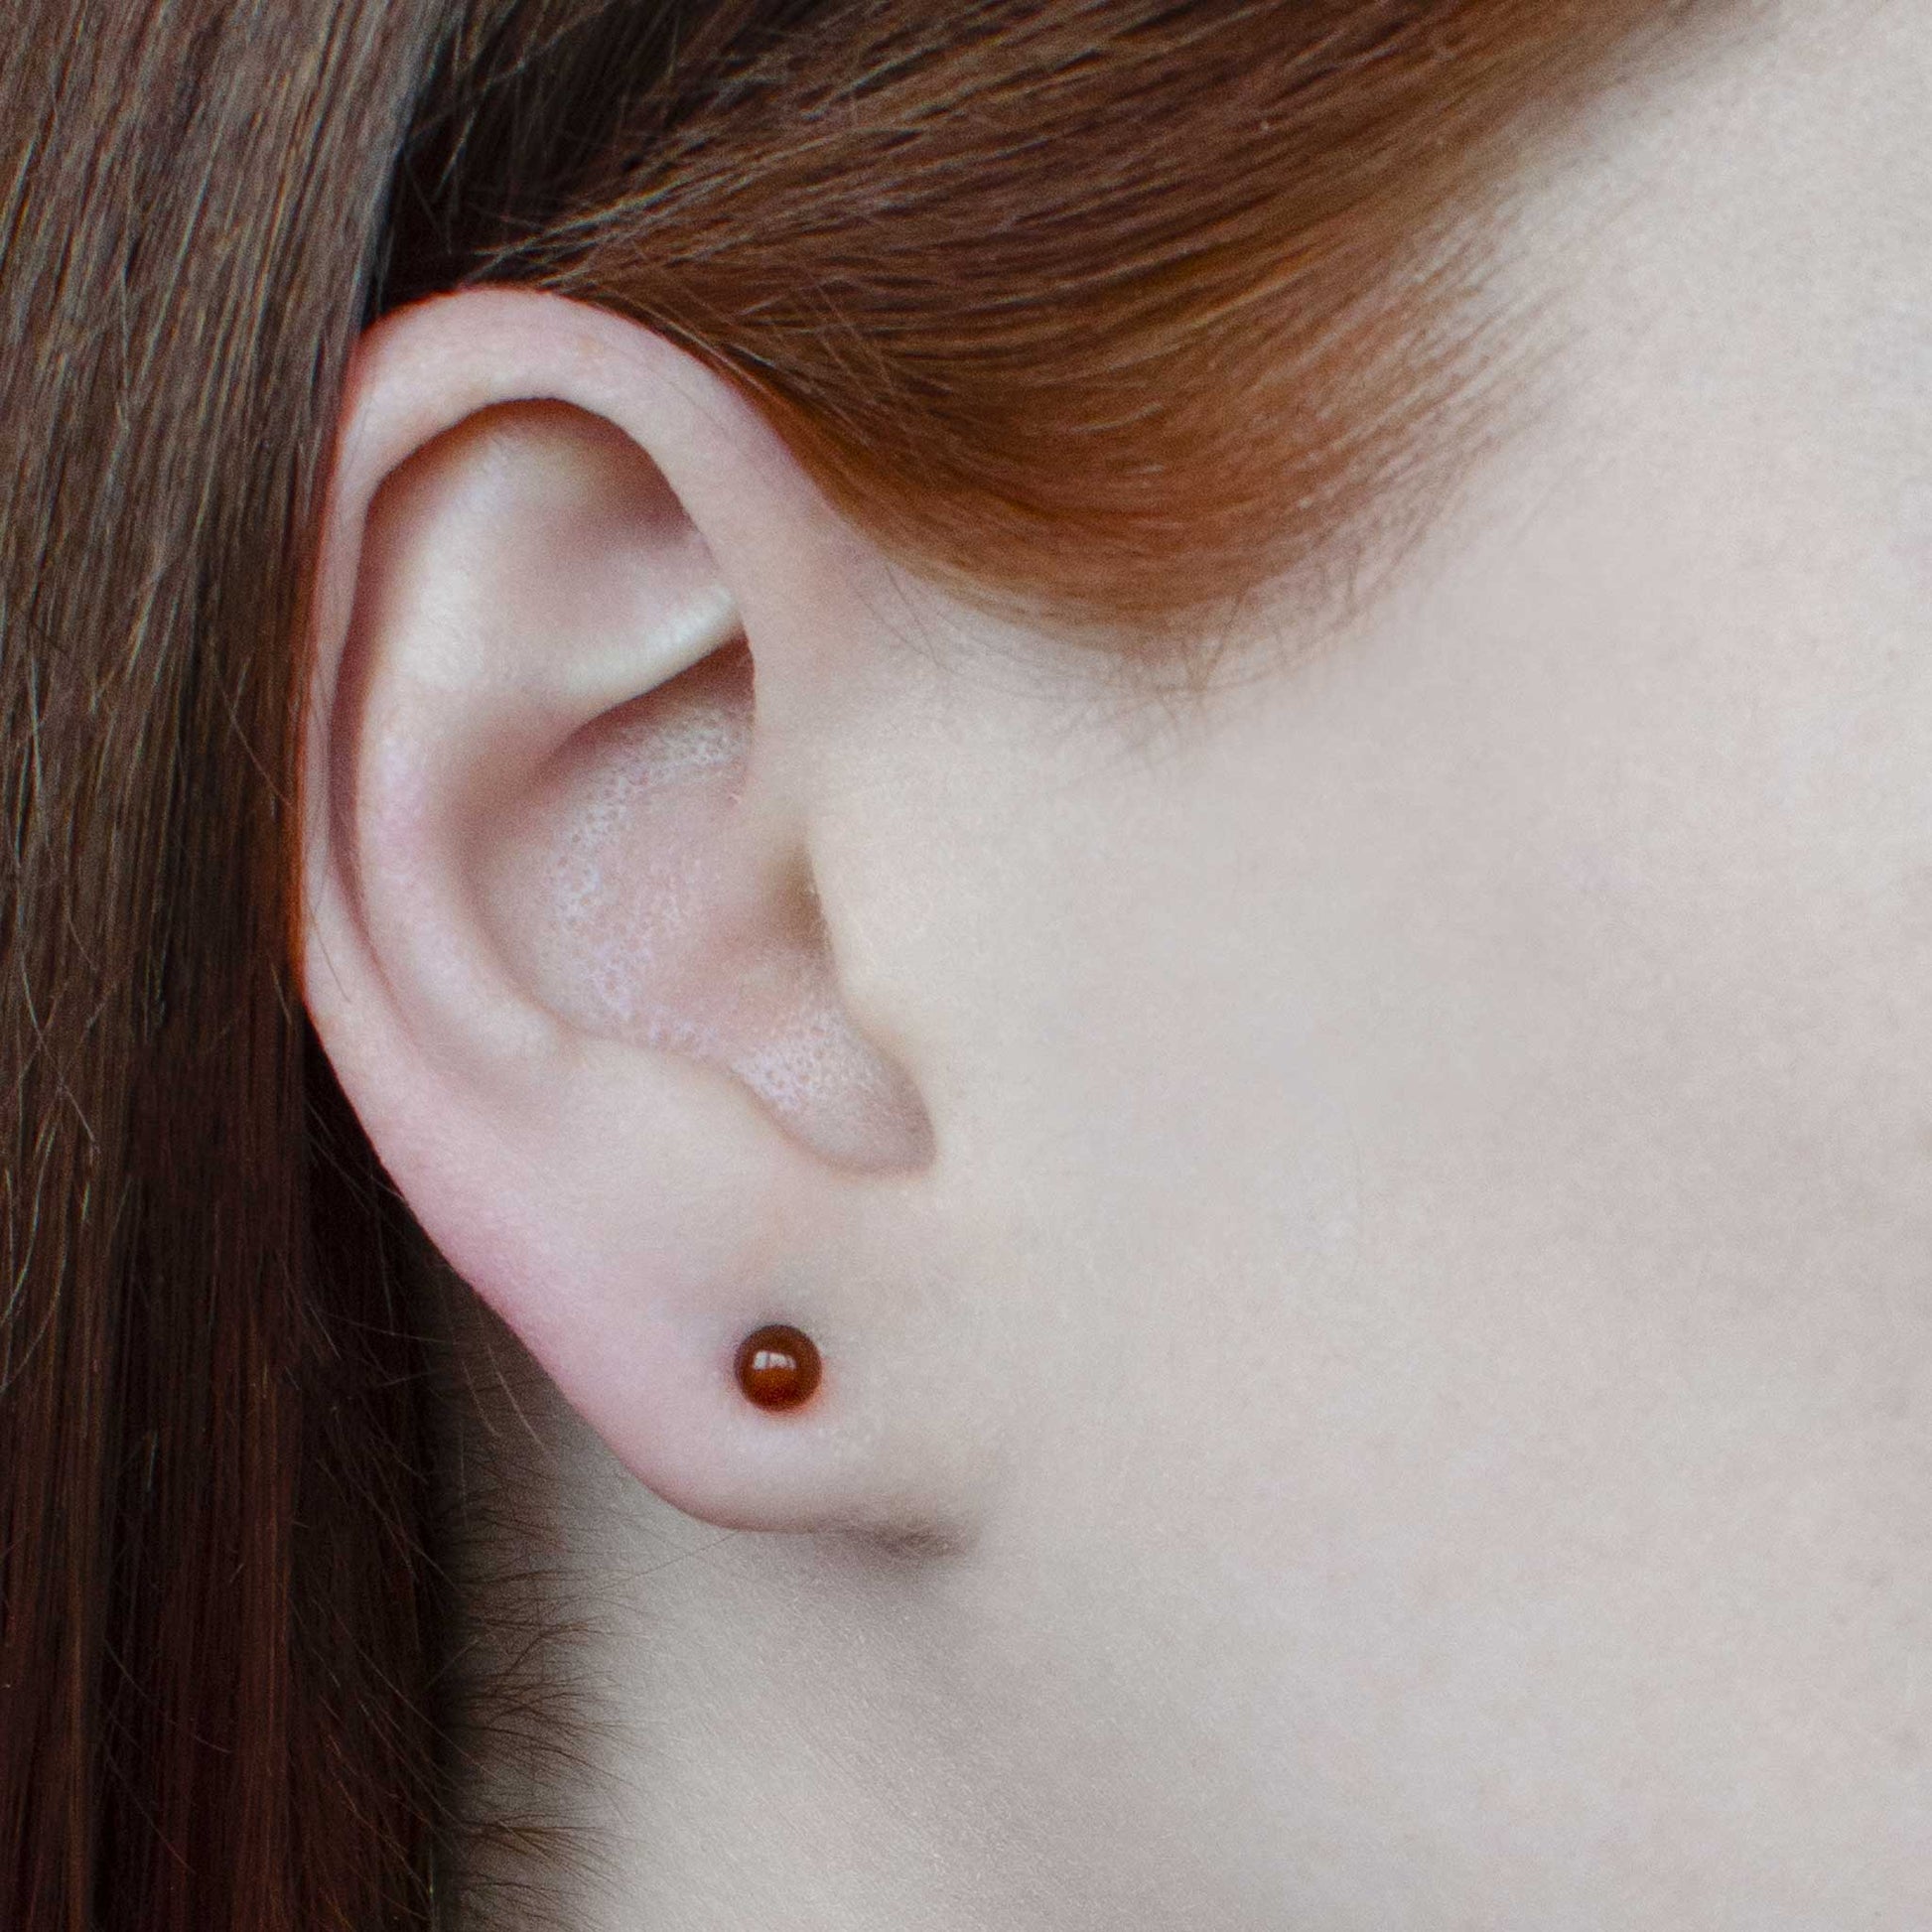 Woman wearing tiny Carnelian stud earring in earlobe